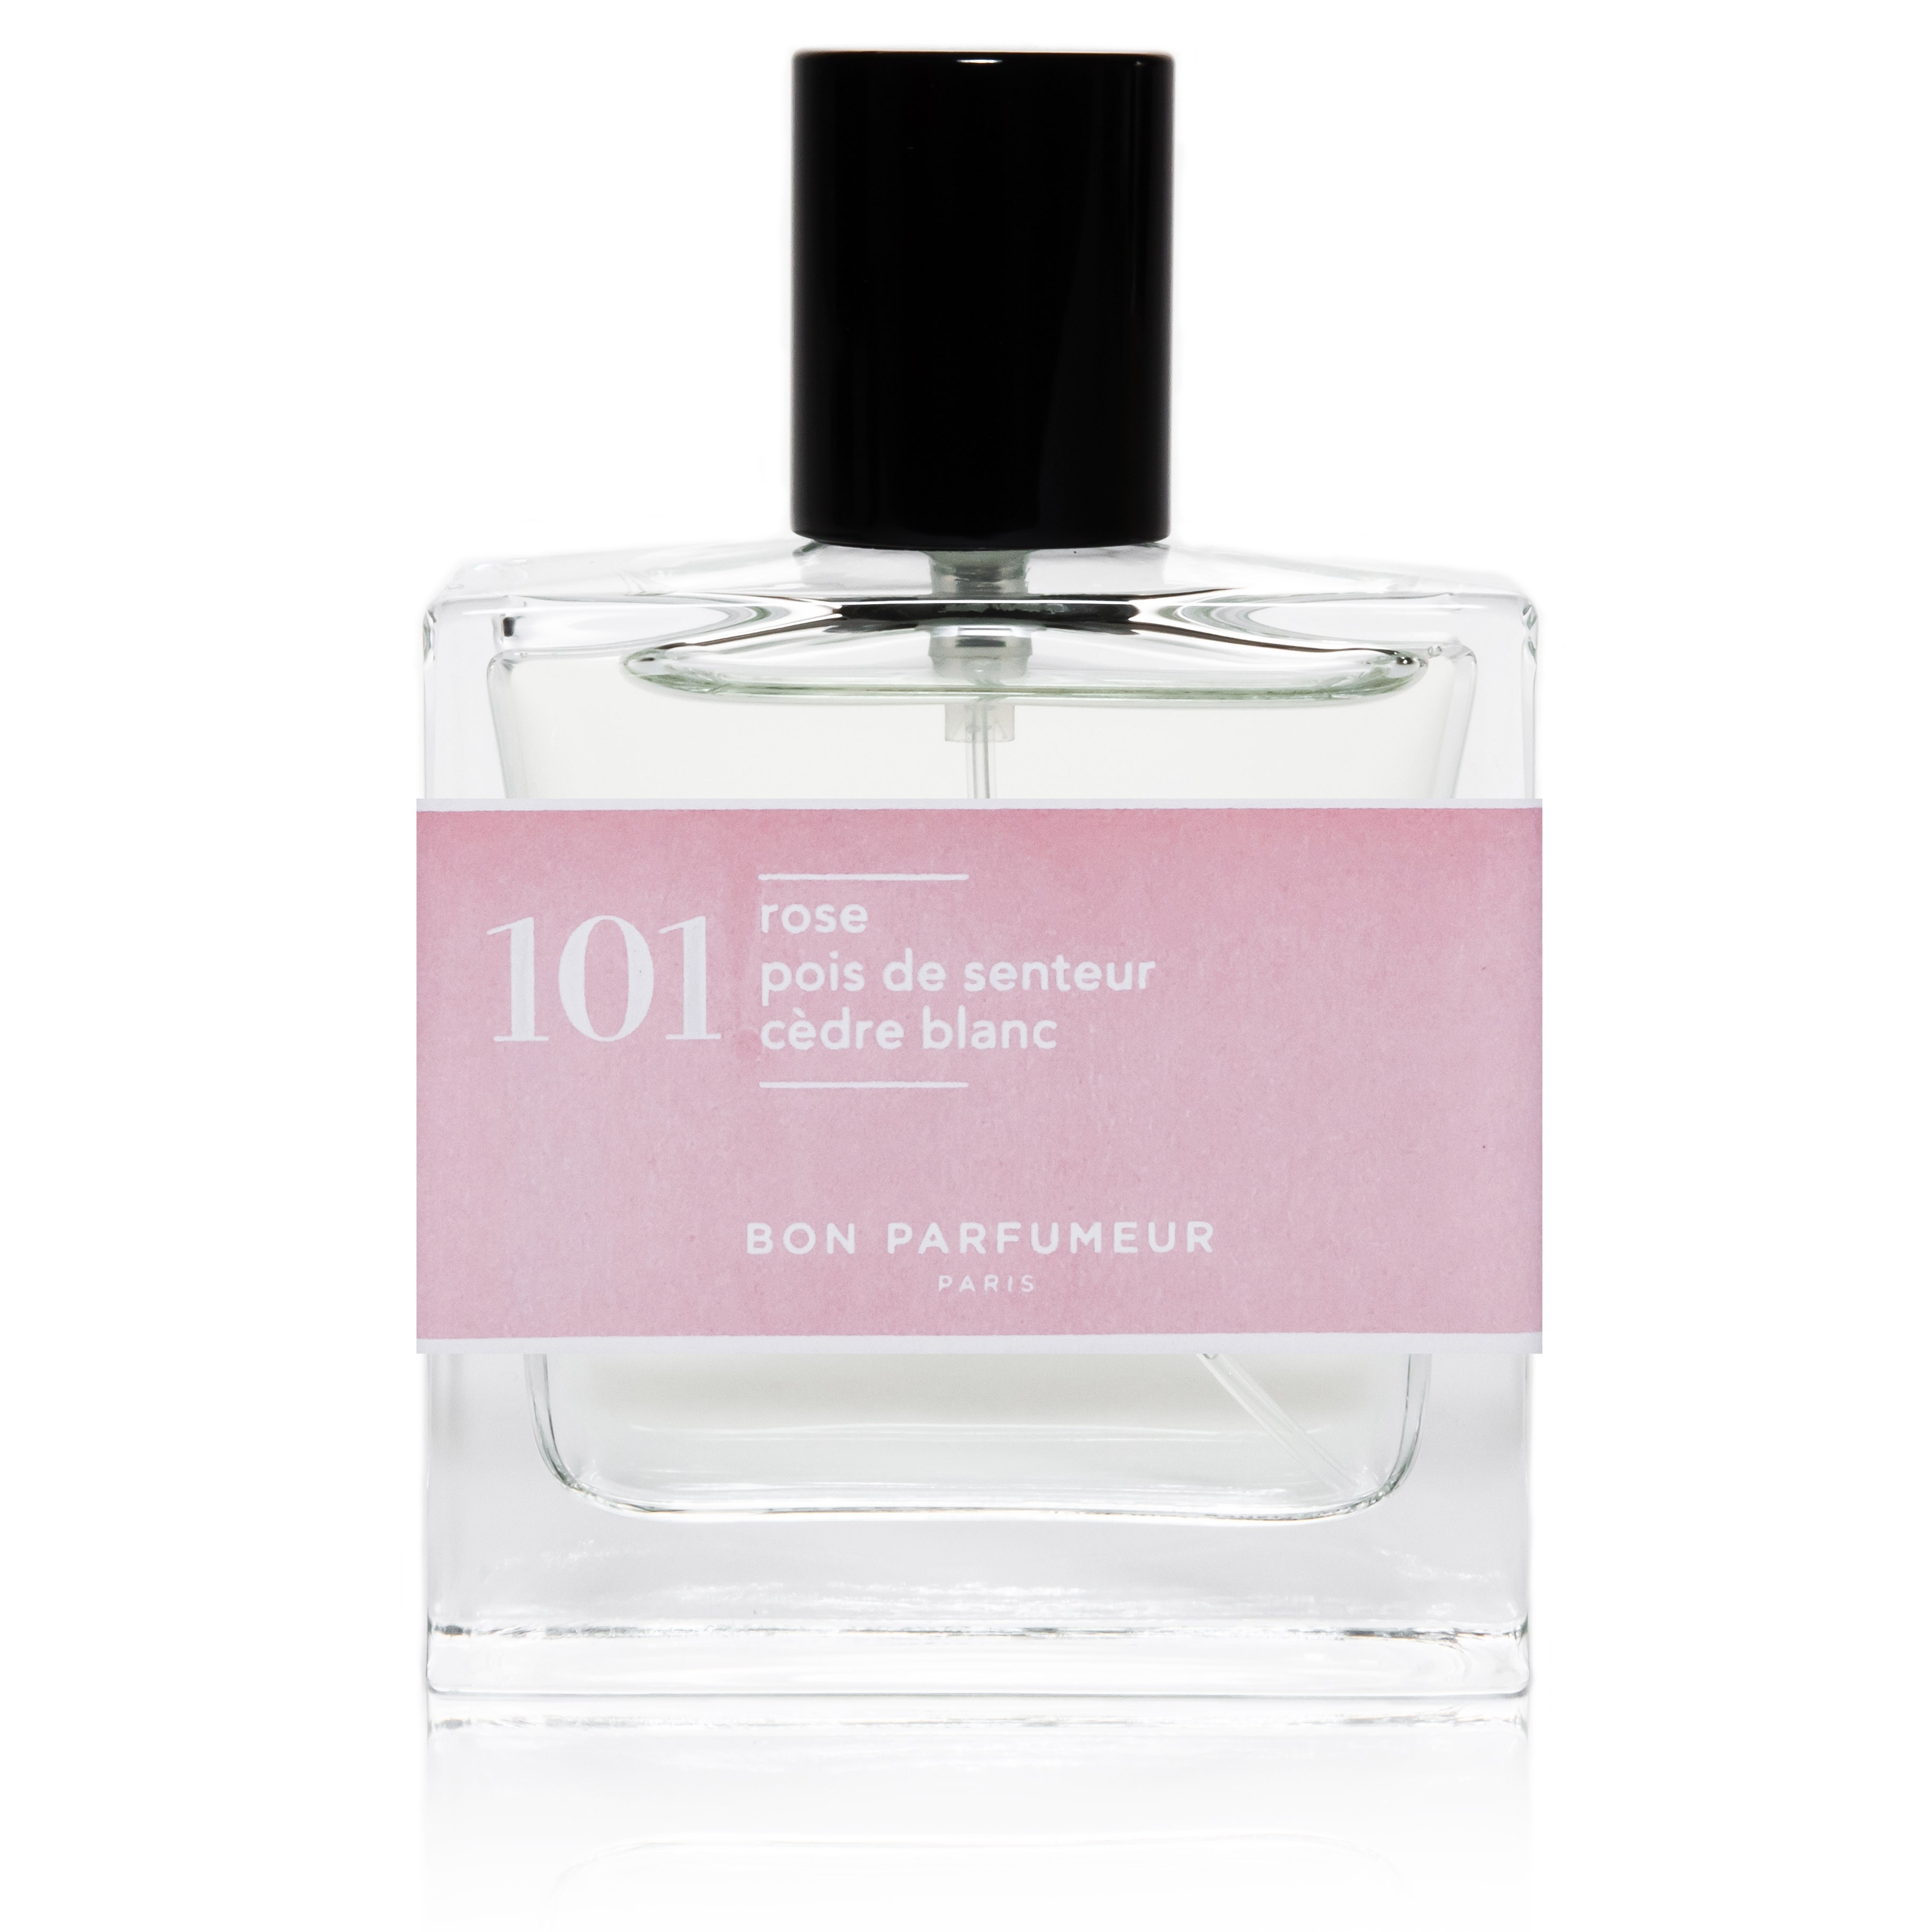 Bon Parfumeur, Paris No. 101. Rose/ Sweet Pea/ White Cedar